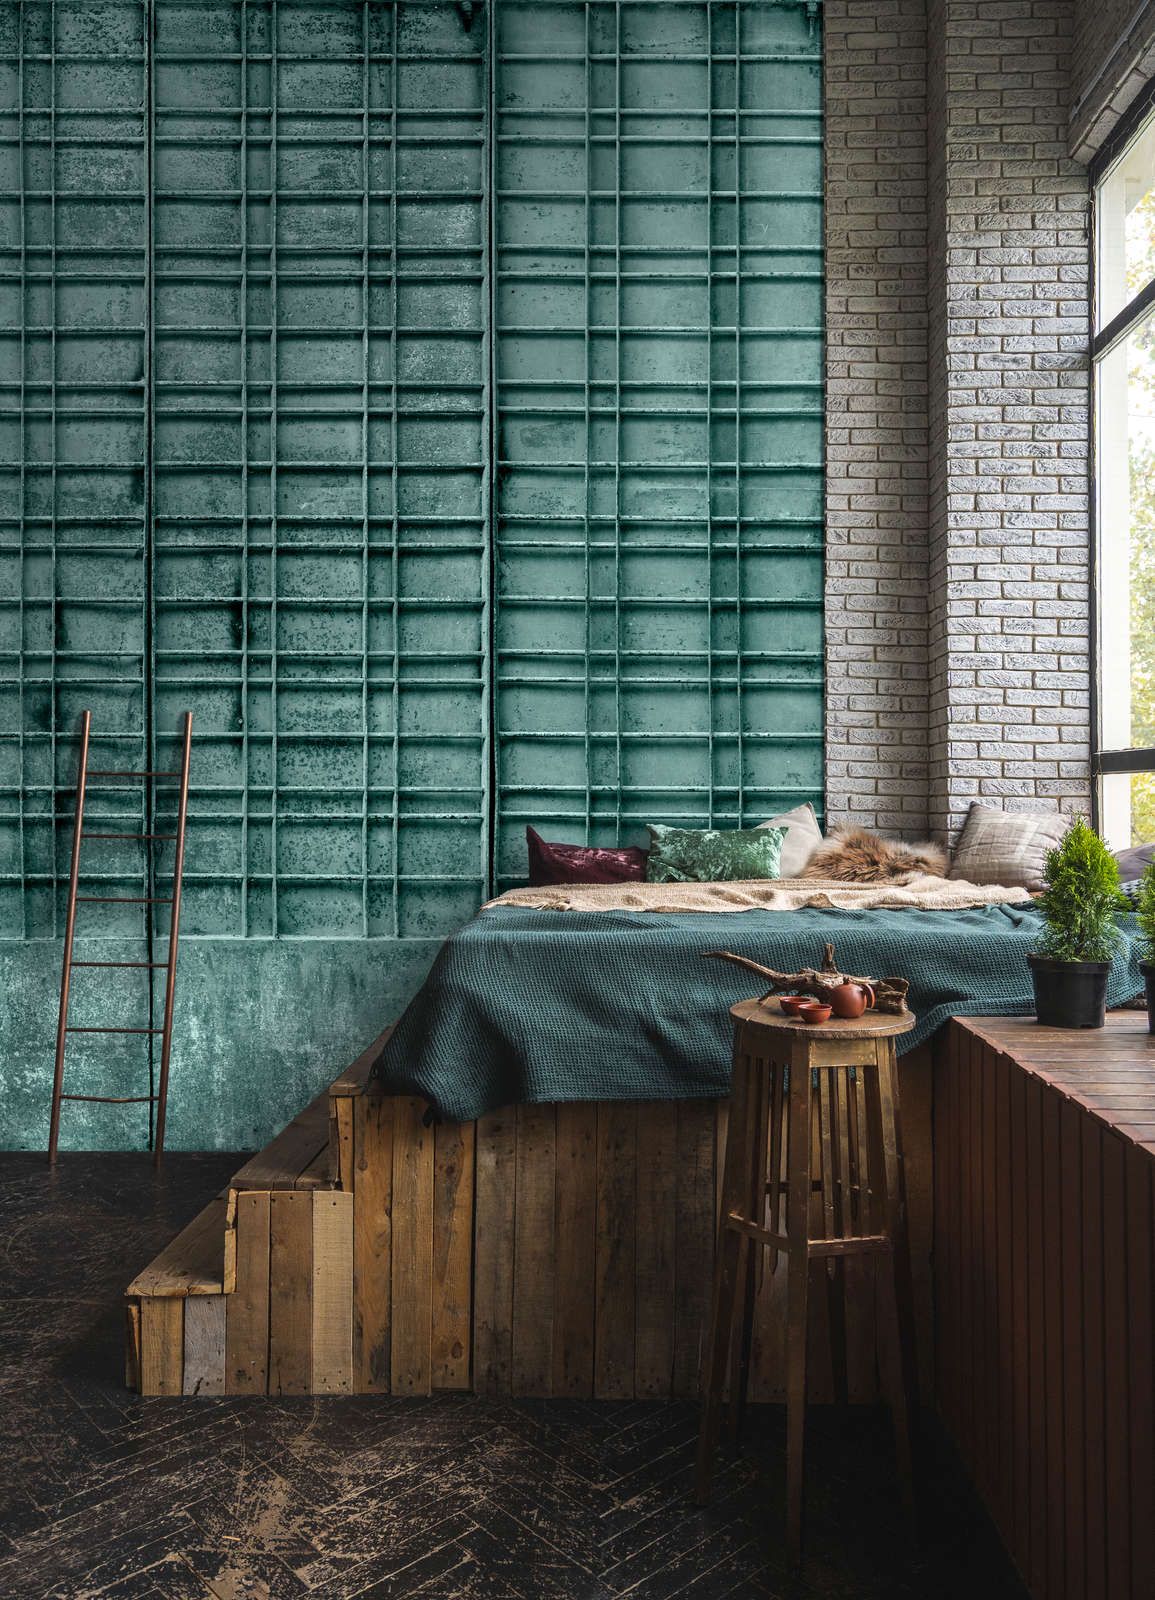             Digital behang »bangalore« - Close-up van een petrolkleurig metalen hek met rechthoekige decoraties - mat, glad vliesmateriaal
        